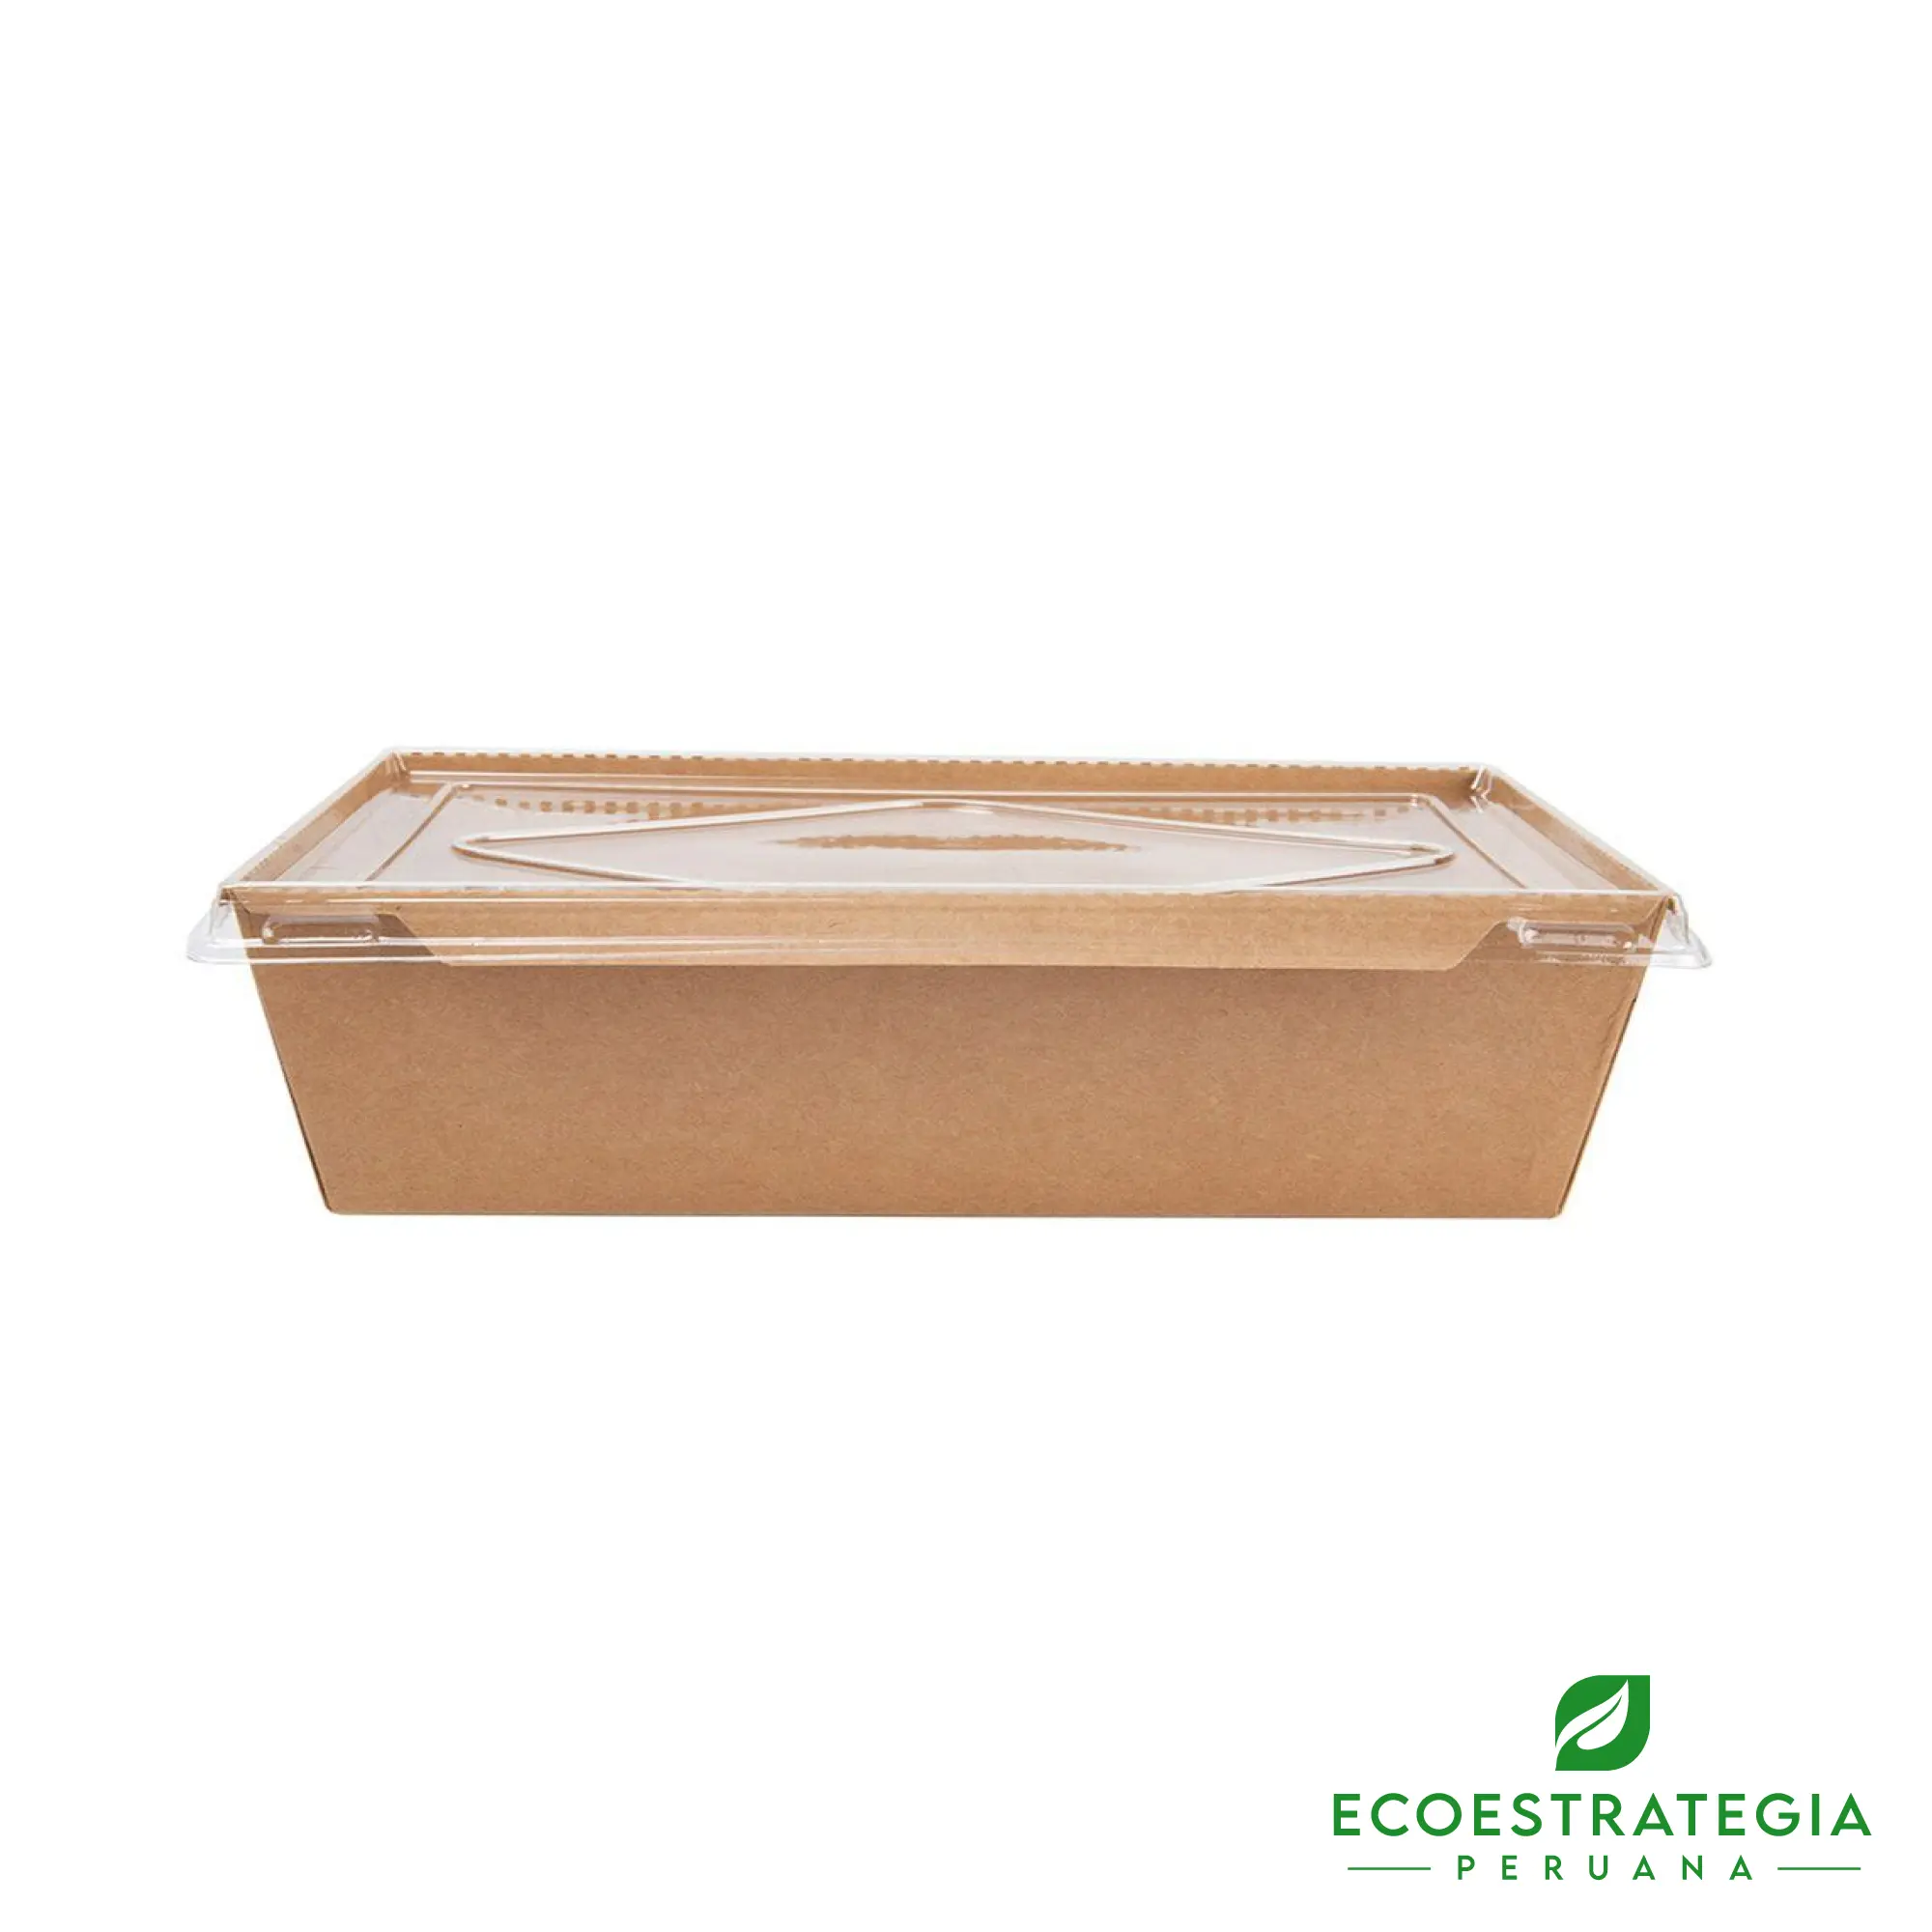 Este bandeja biodegradable de 900ml, es un producto de materiales biodegradables, hecho a base de cartón Kraft. Cotiza envases, empaques y tapers para comidas